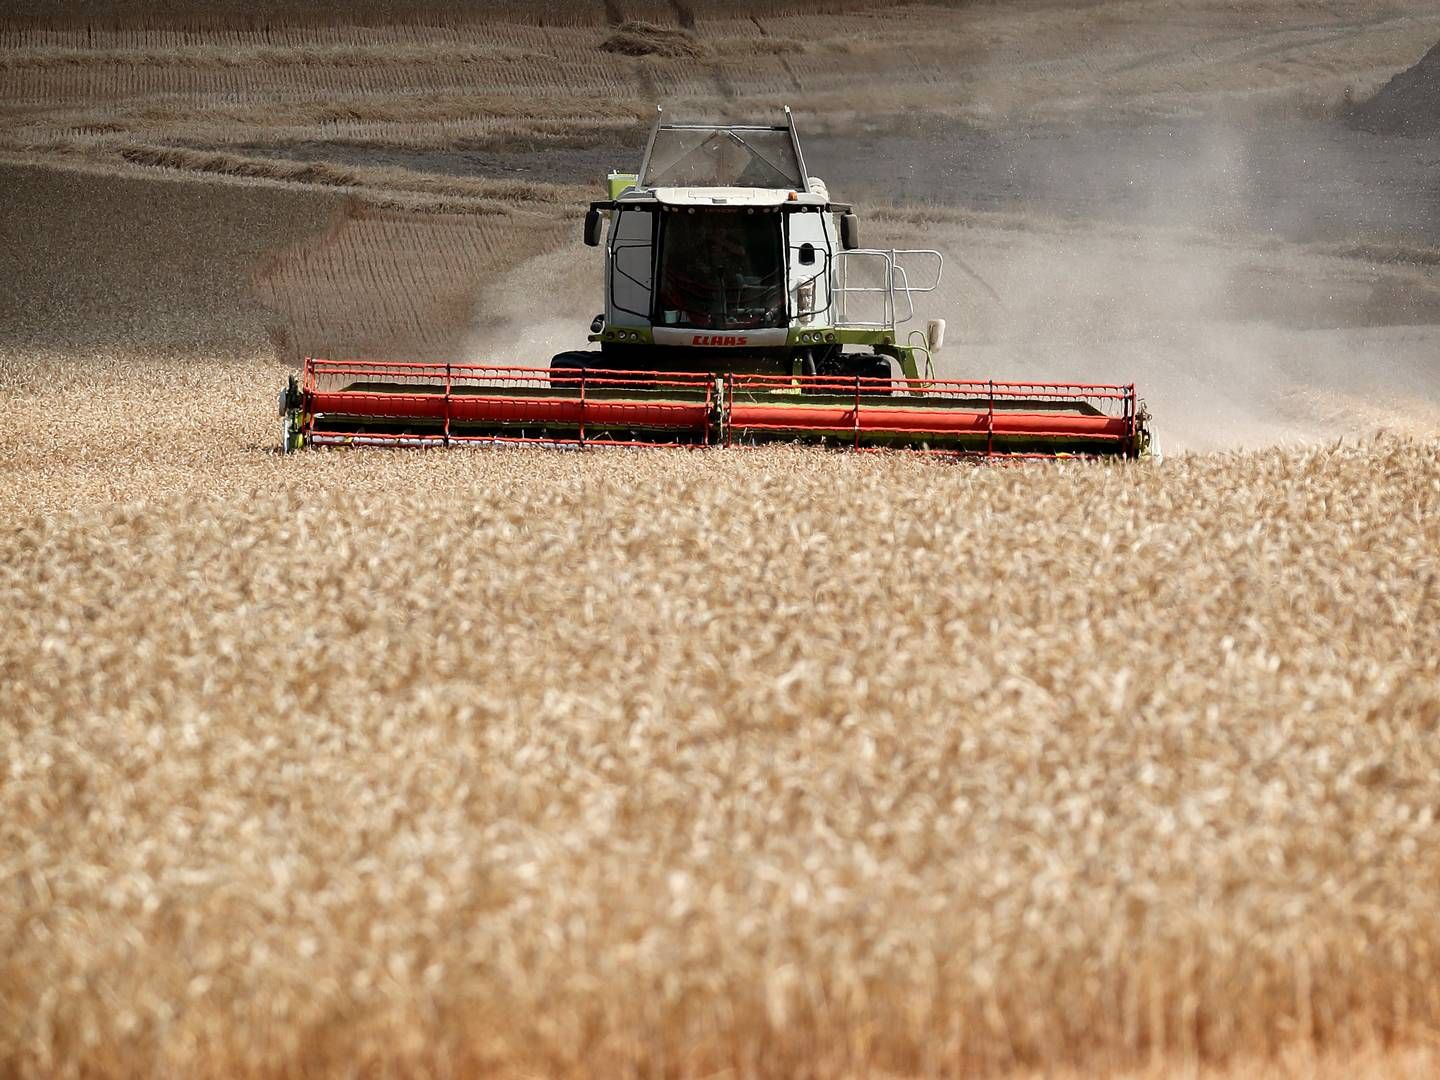 Prisen på korn og andre landbrugsråvarer fortsætter med at falde på råvarebørserne. | Foto: Jens Dresling